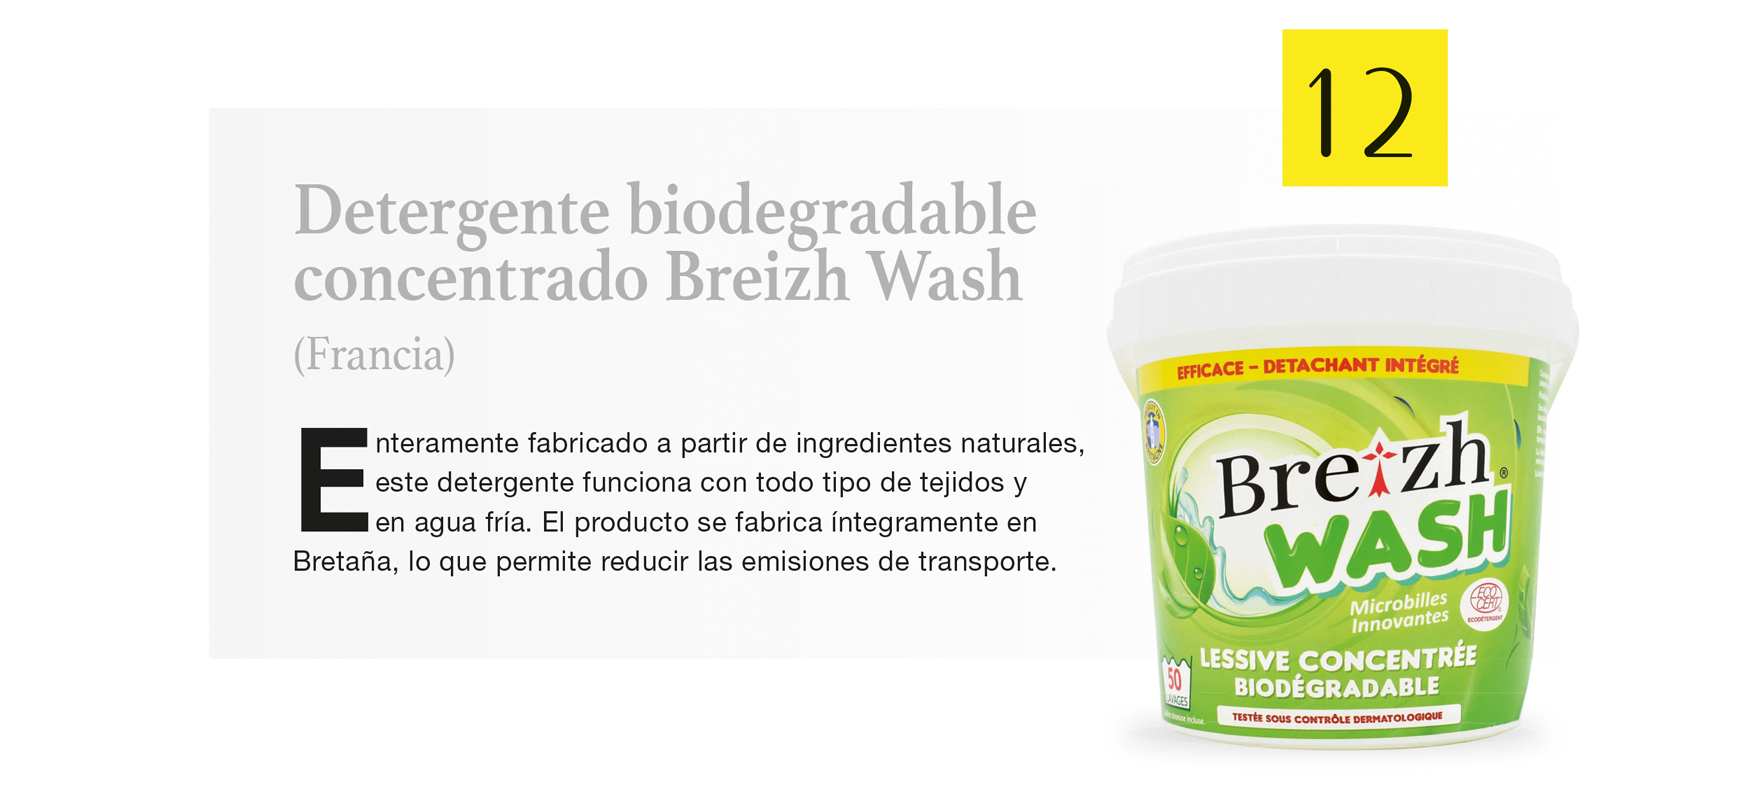 Detergente biodegradable concentrado Breizh Wash (Francia)